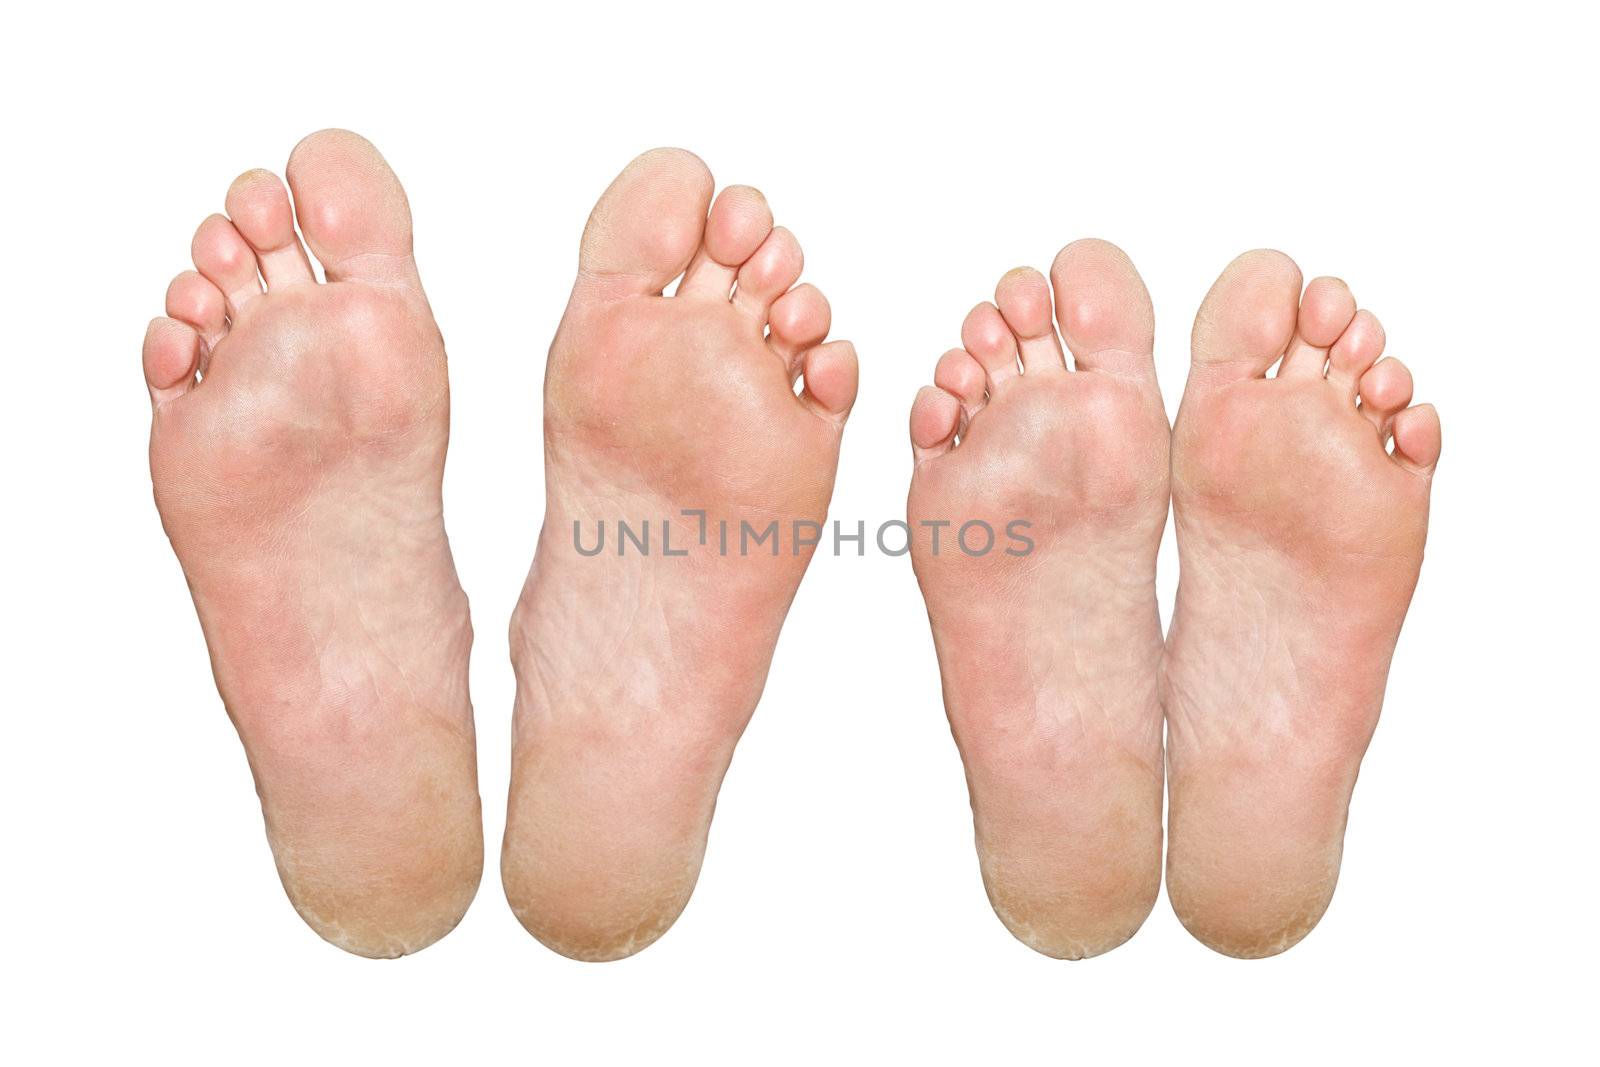 Caucasian feet by petrkurgan